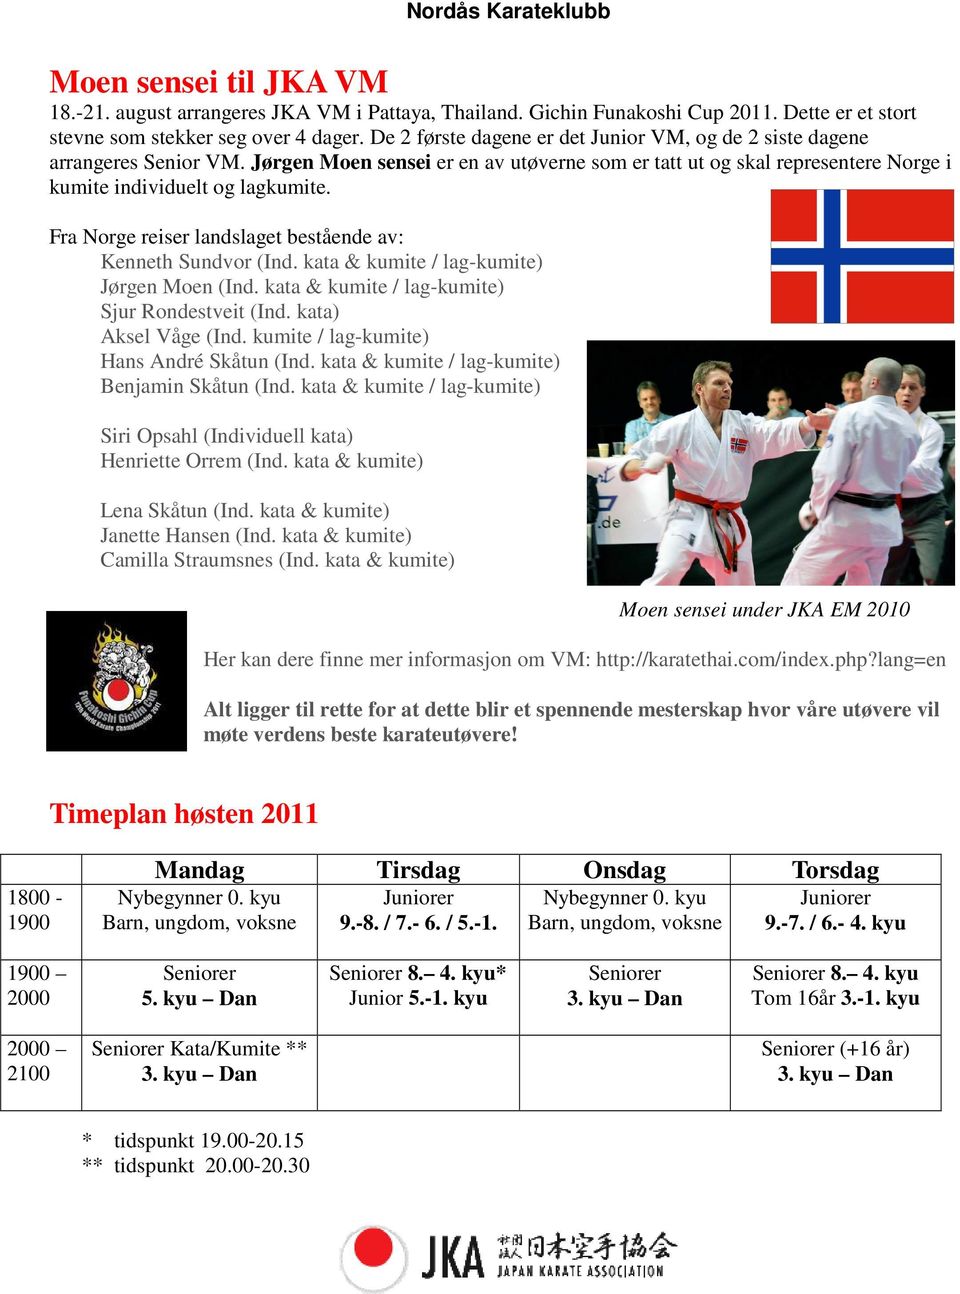 Fra Norge reiser landslaget bestående av: Kenneth Sundvor (Ind. kata & kumite / lag-kumite) Jørgen Moen (Ind. kata & kumite / lag-kumite) Sjur Rondestveit (Ind. kata) Aksel Våge (Ind.